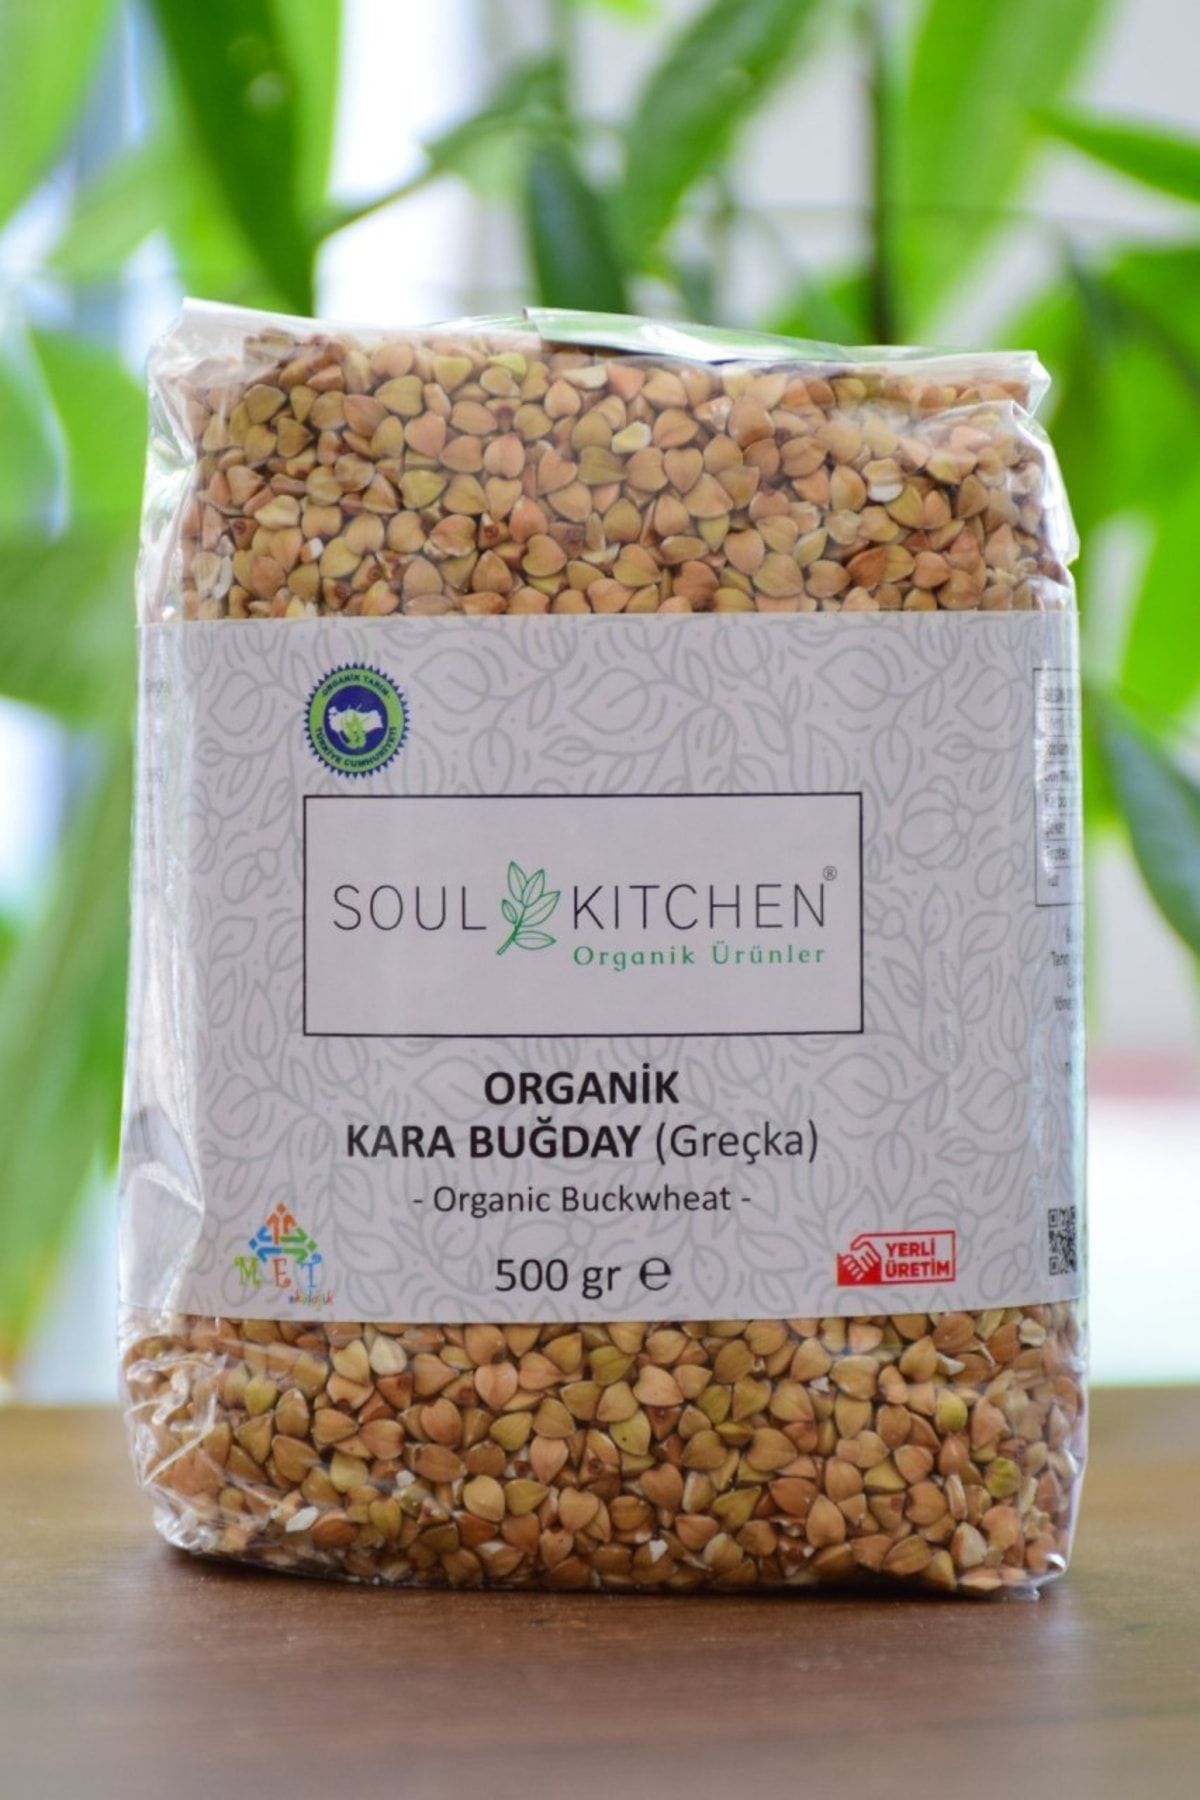 Soul Kitchen Organik Ürünler Organik Karabuğday  500gr